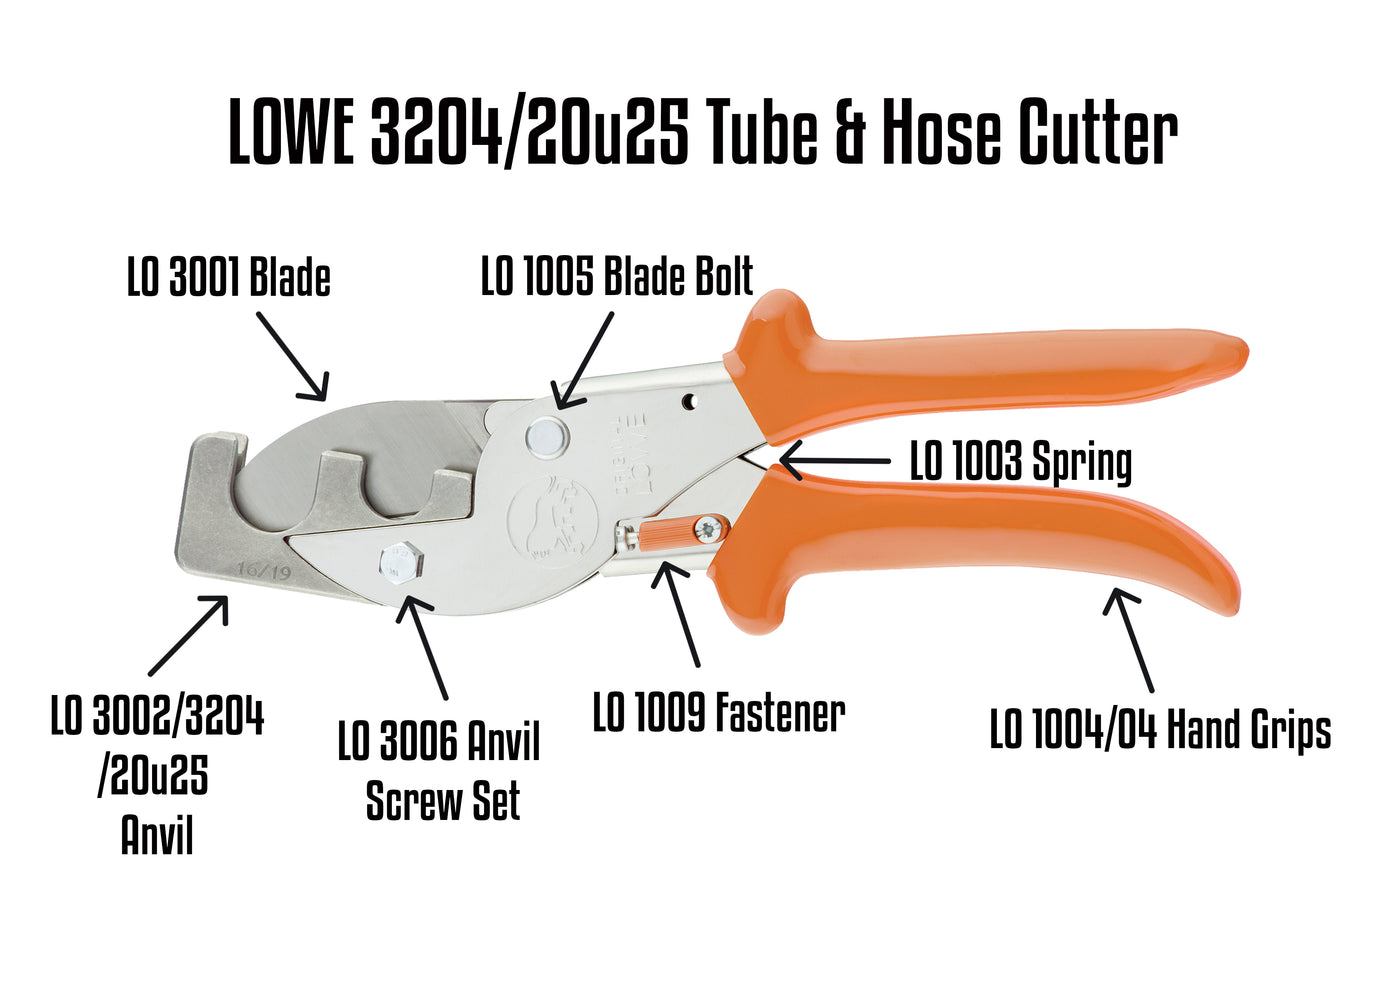 LO 3204/20u25 Tube Cutter